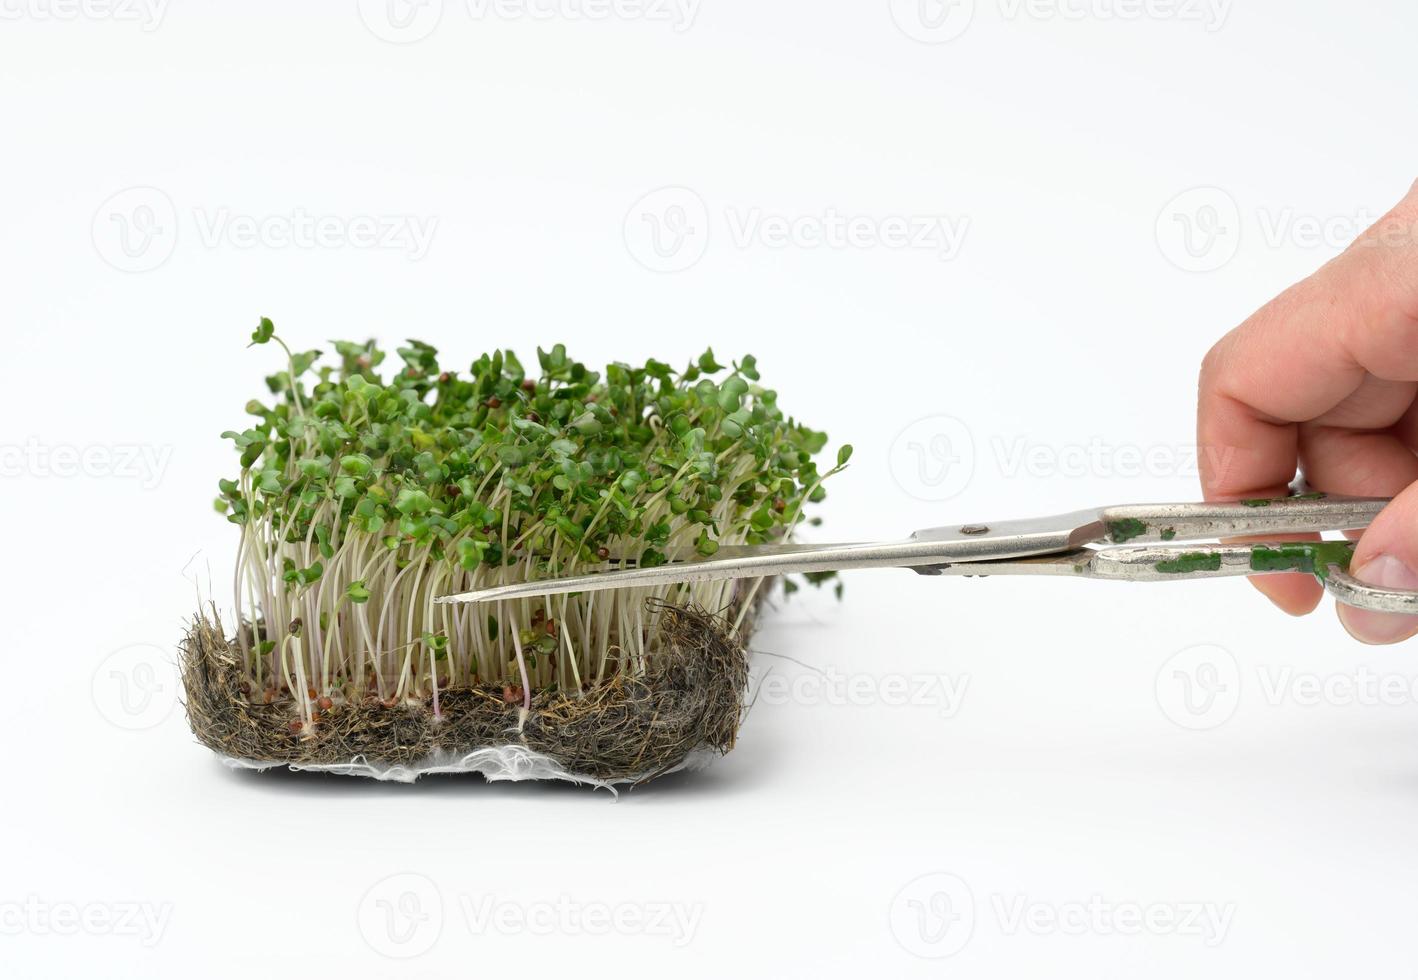 grüne sprossen von brokkoli auf weißem hintergrund, hand schneidet die blätter mit einer schere, nützliches mikrogrün foto